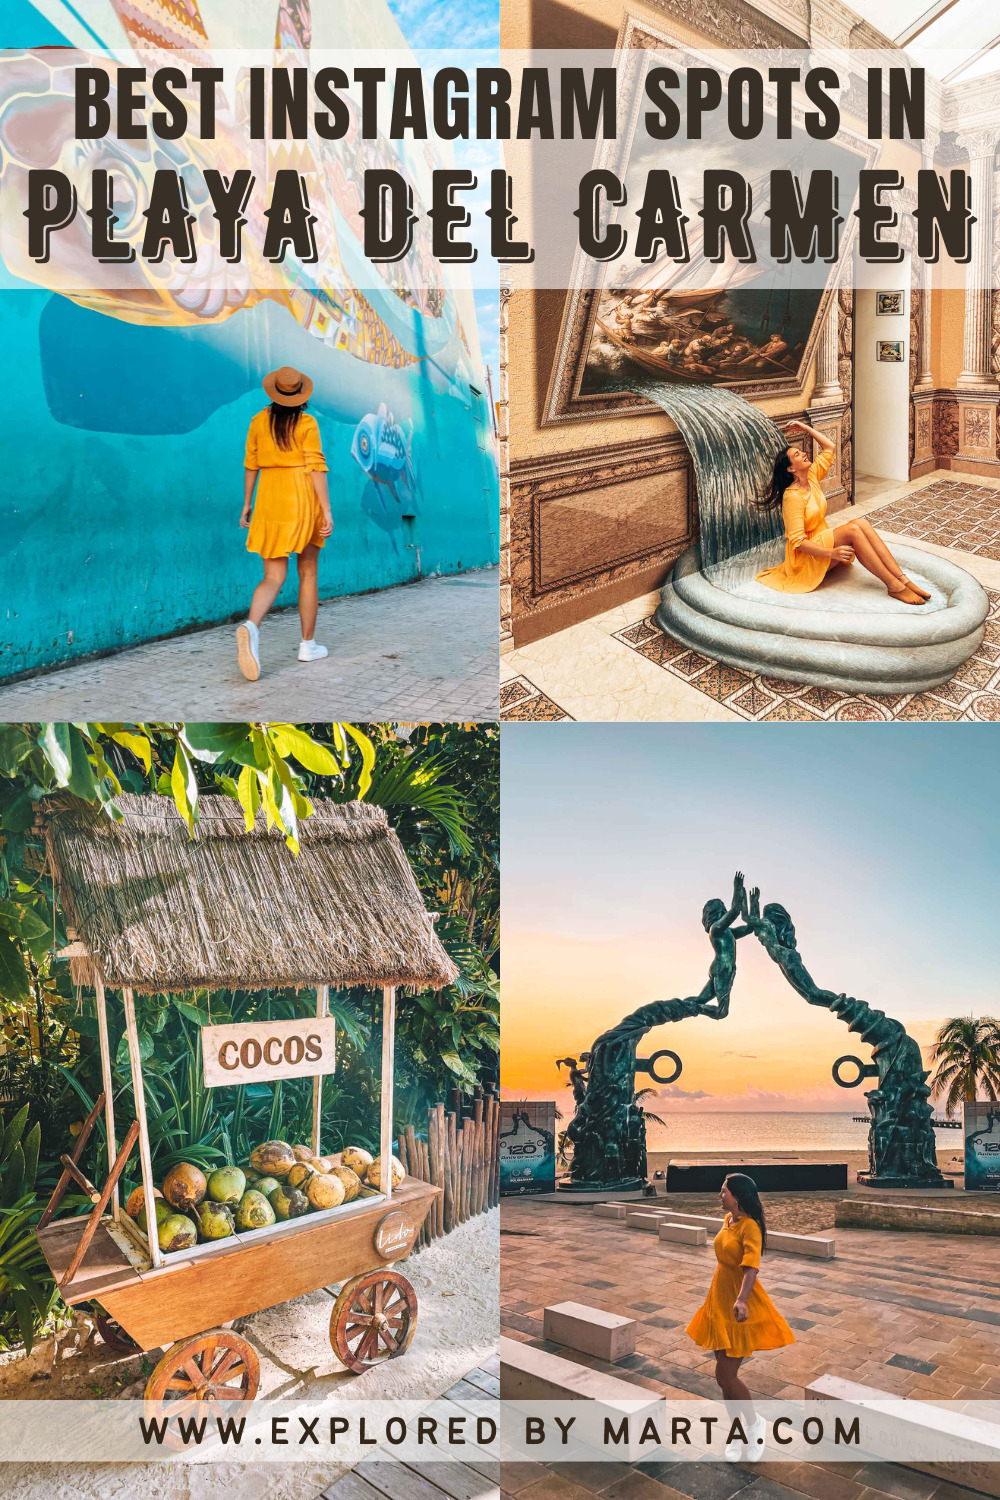 Cool Instagram spots in Playa del Carmen in Mexico